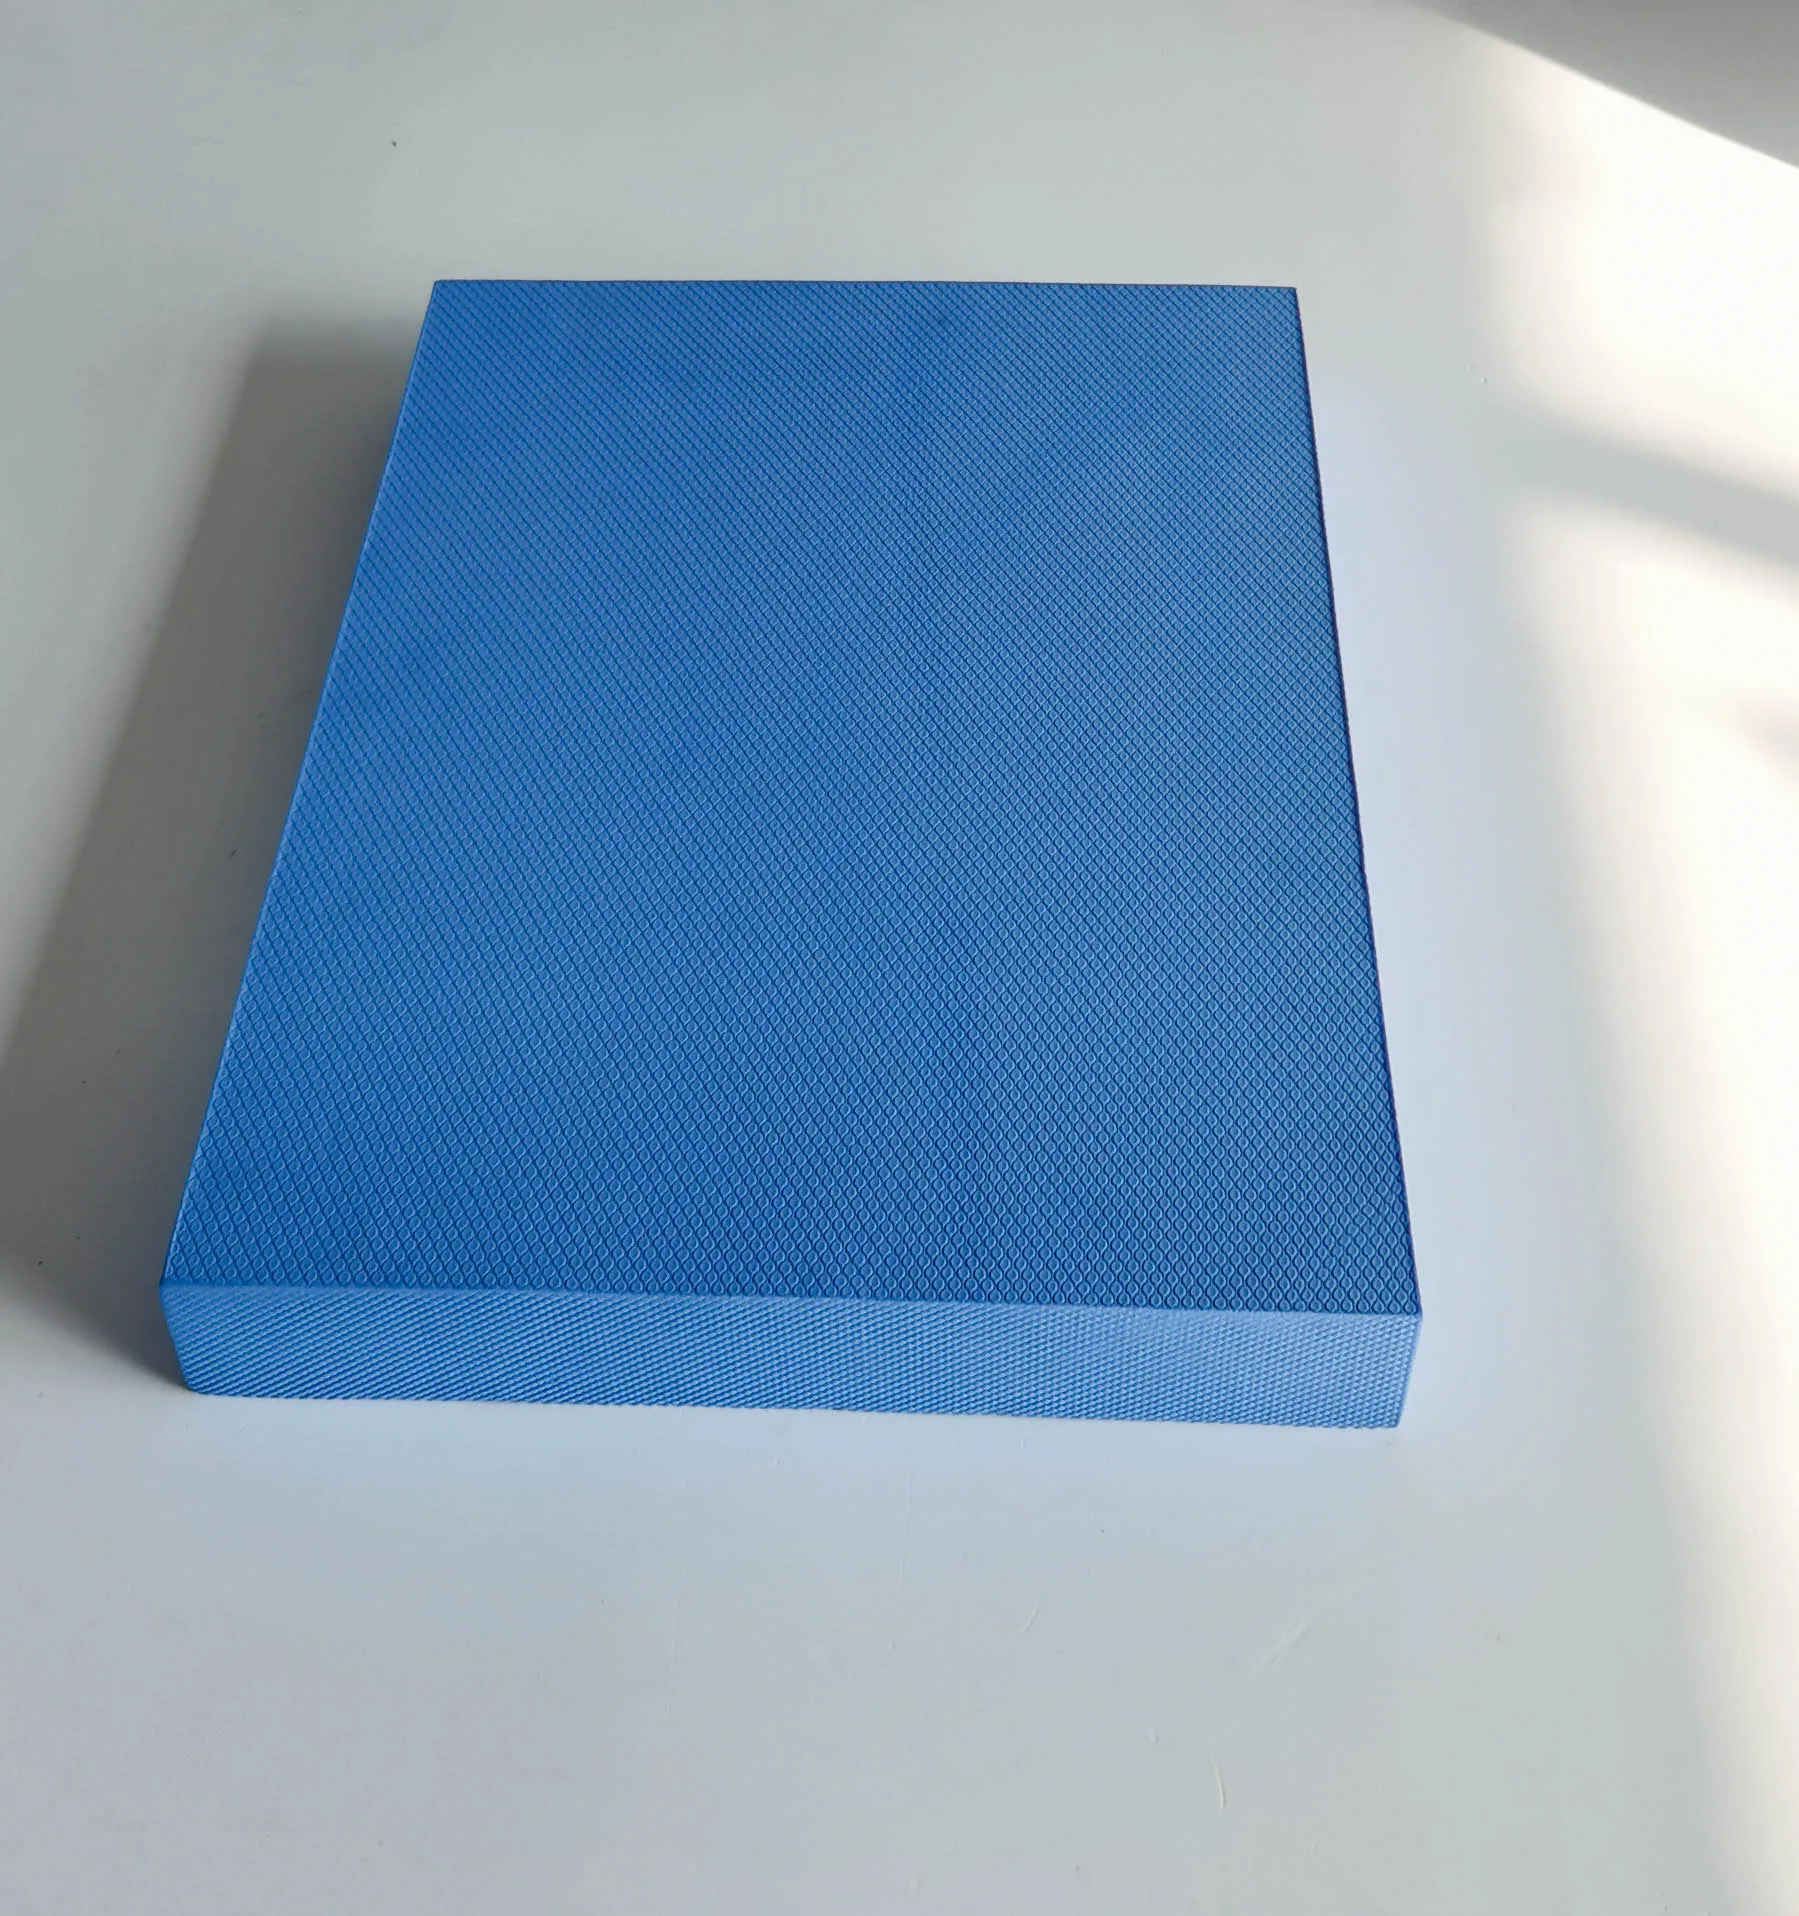 Soft Foam Hardness Gym Fitness Non Slip Large TPE Yoga Therapy Training Cushion large Balance Pad